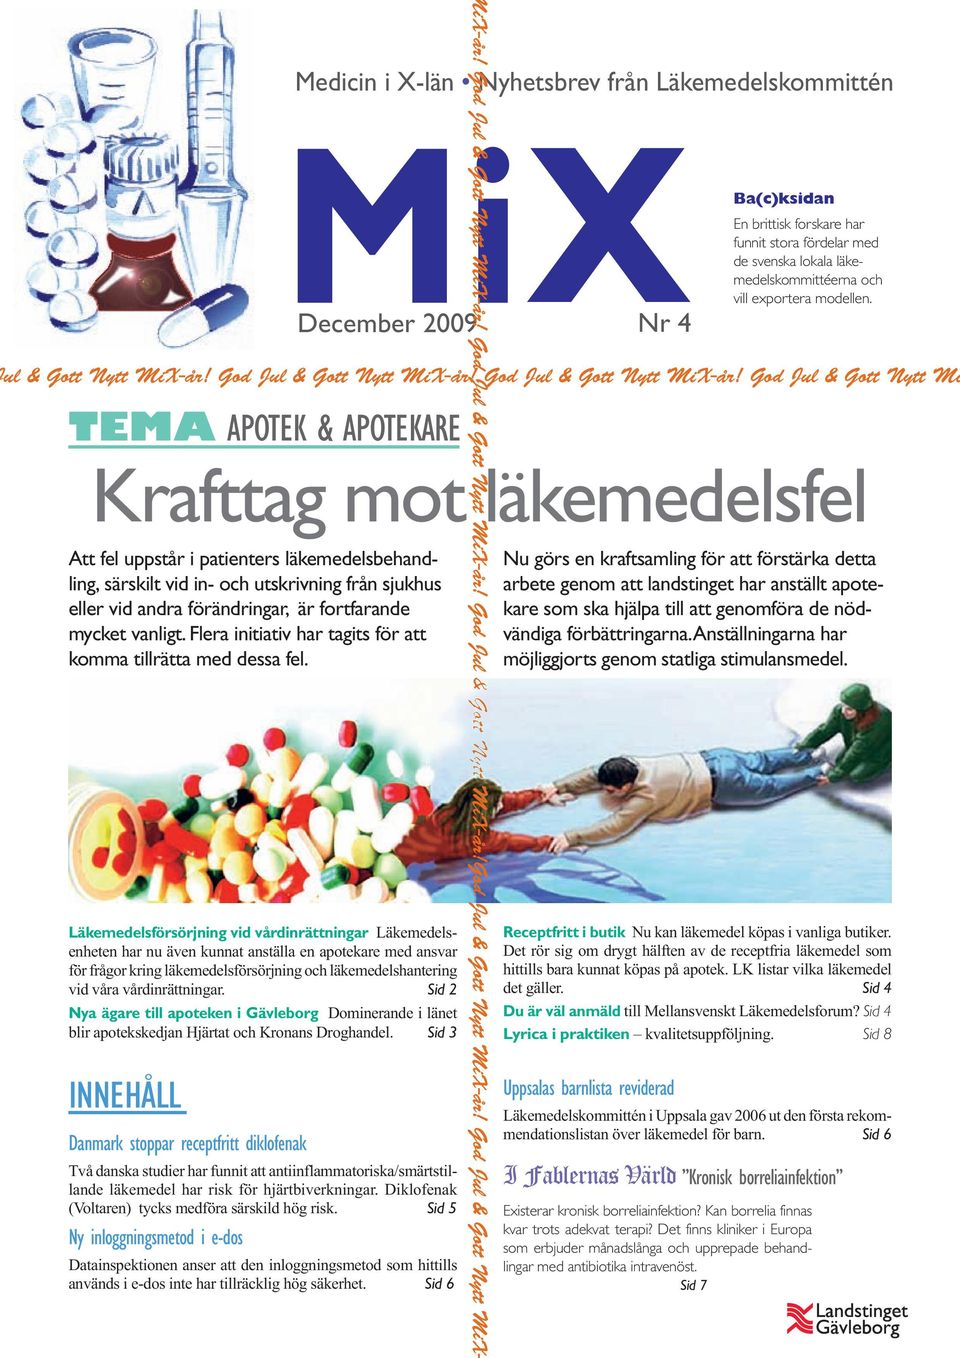 4 Ba(c)ksidan En brittisk forskare har funnit stora fördelar med de svenska lokala läkemedelskommittéerna och vill exportera modellen. ul & Gott Nytt MiX-år! God Jul & Gott Nytt MiX-år!